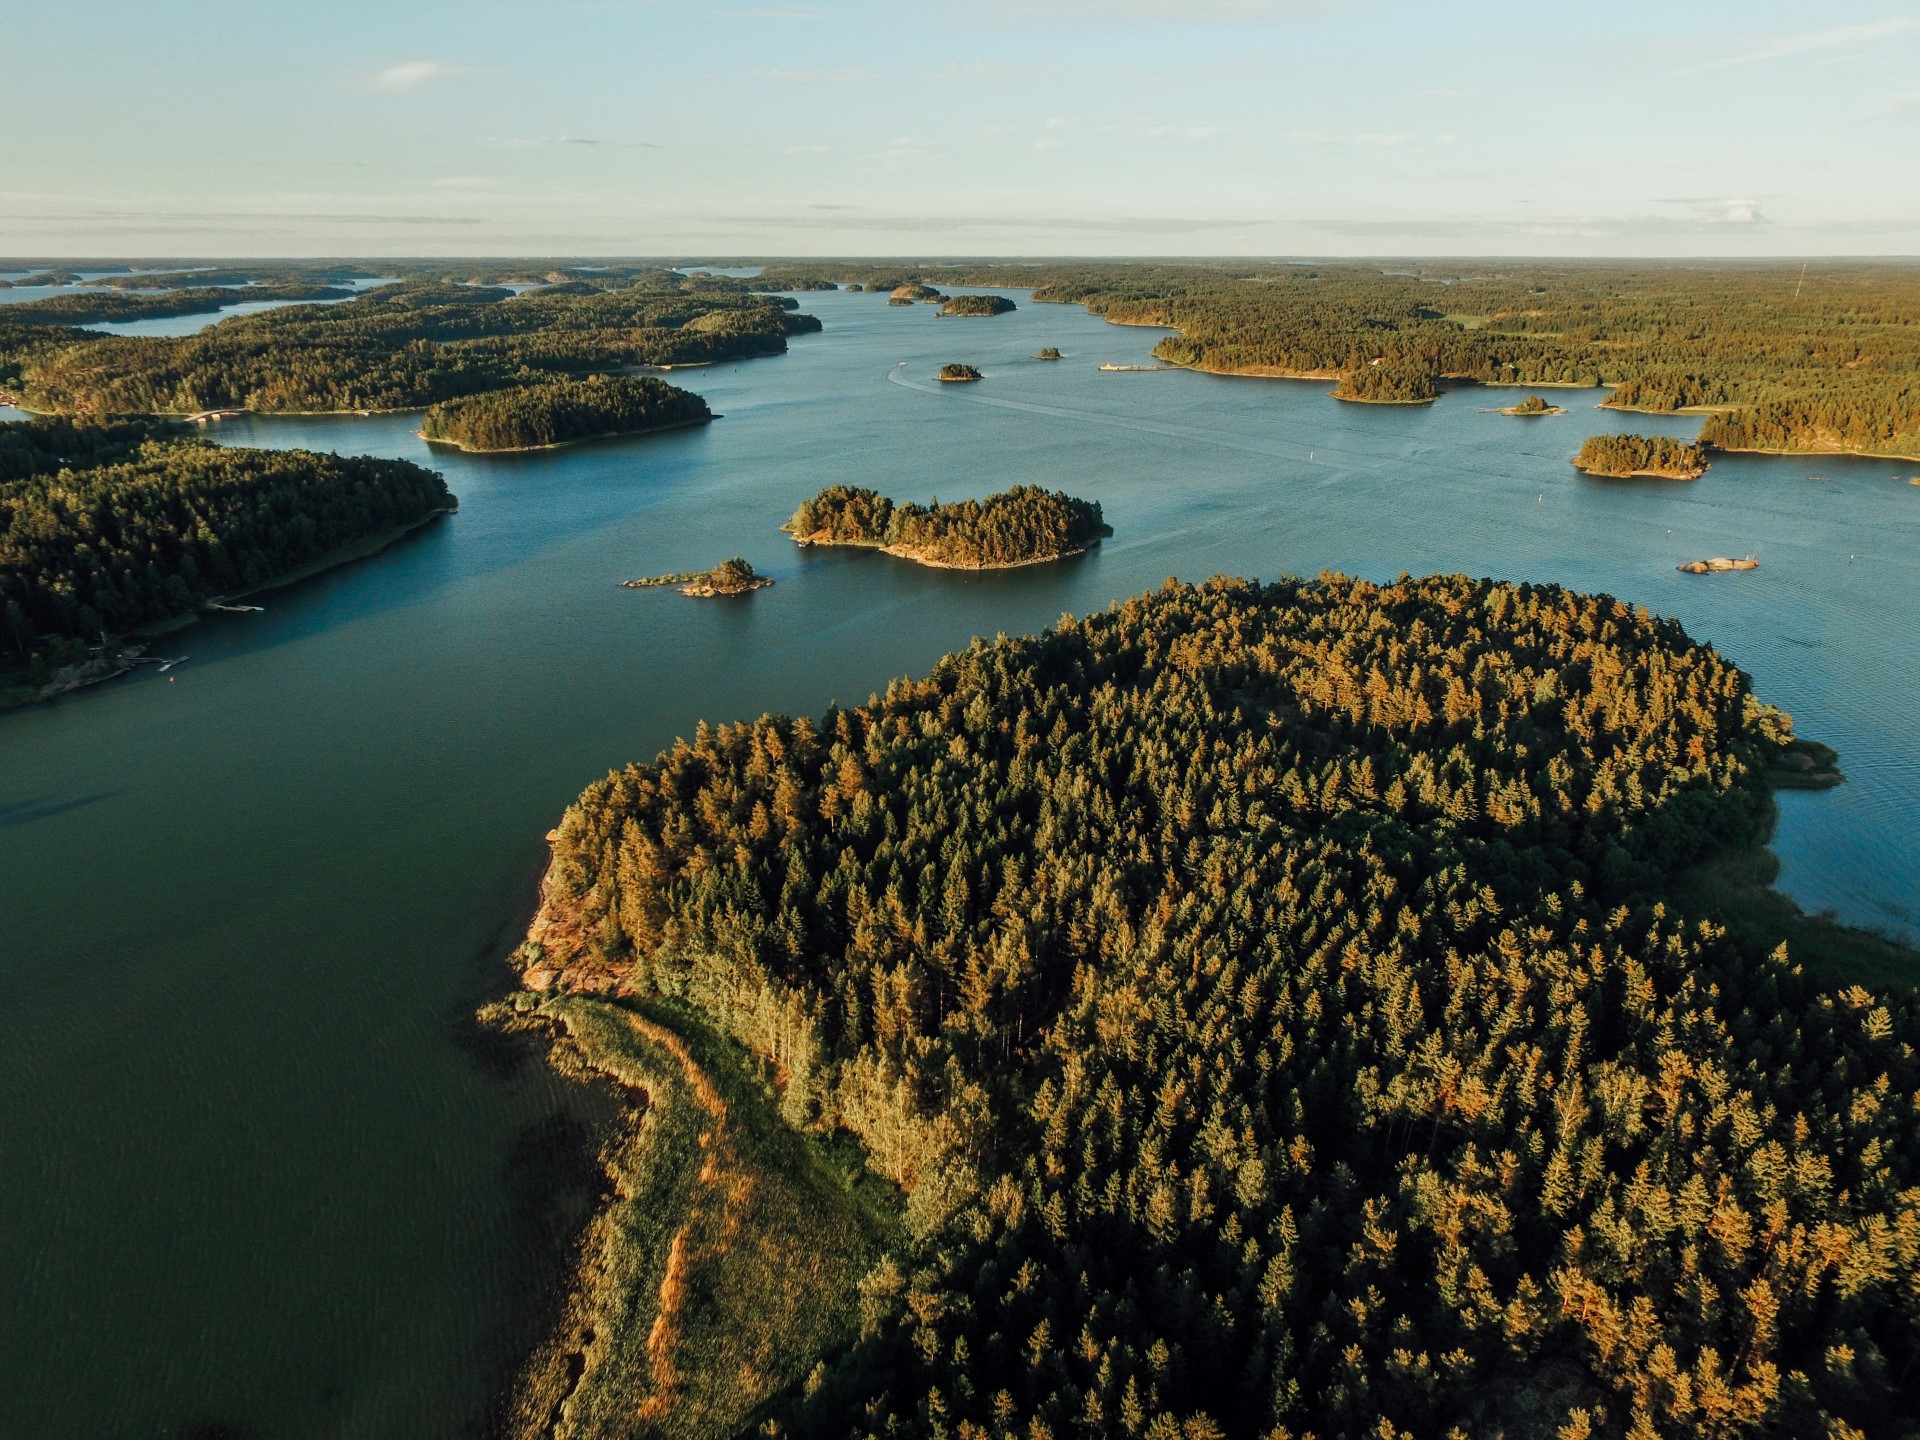 Finnland: Klinkerboote und Geigenspiel werden immaterielles Kulturerbe